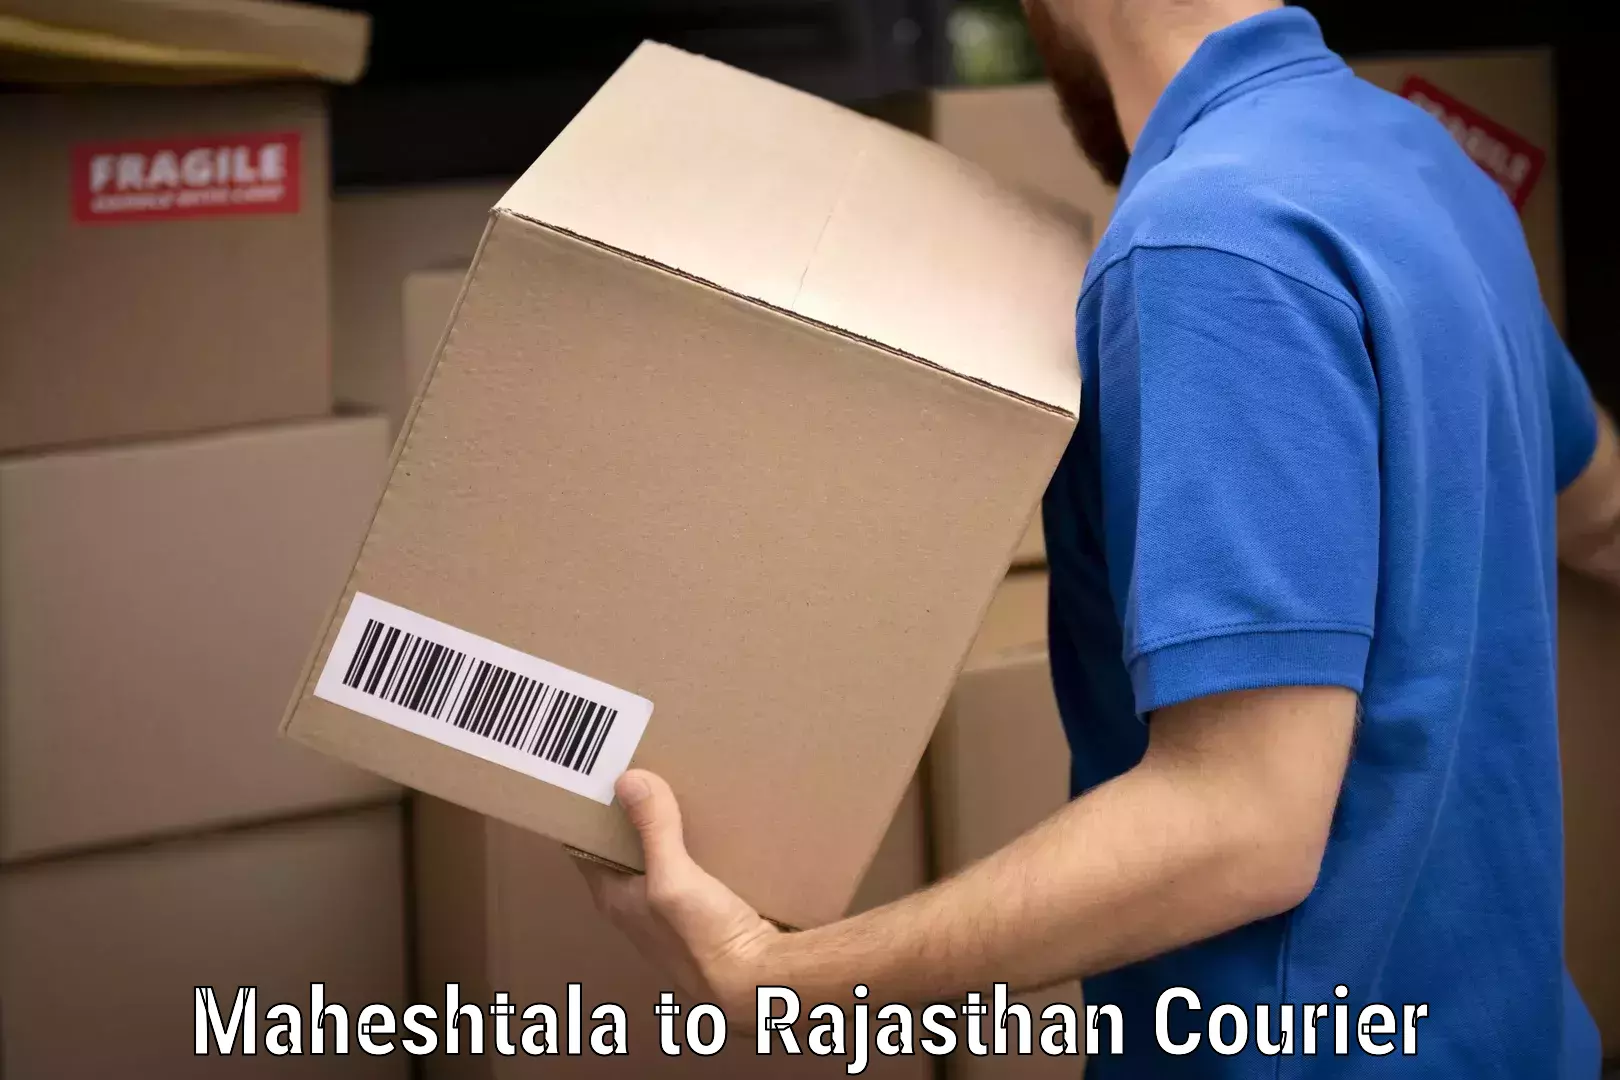 Household goods transport service Maheshtala to Rajasthan